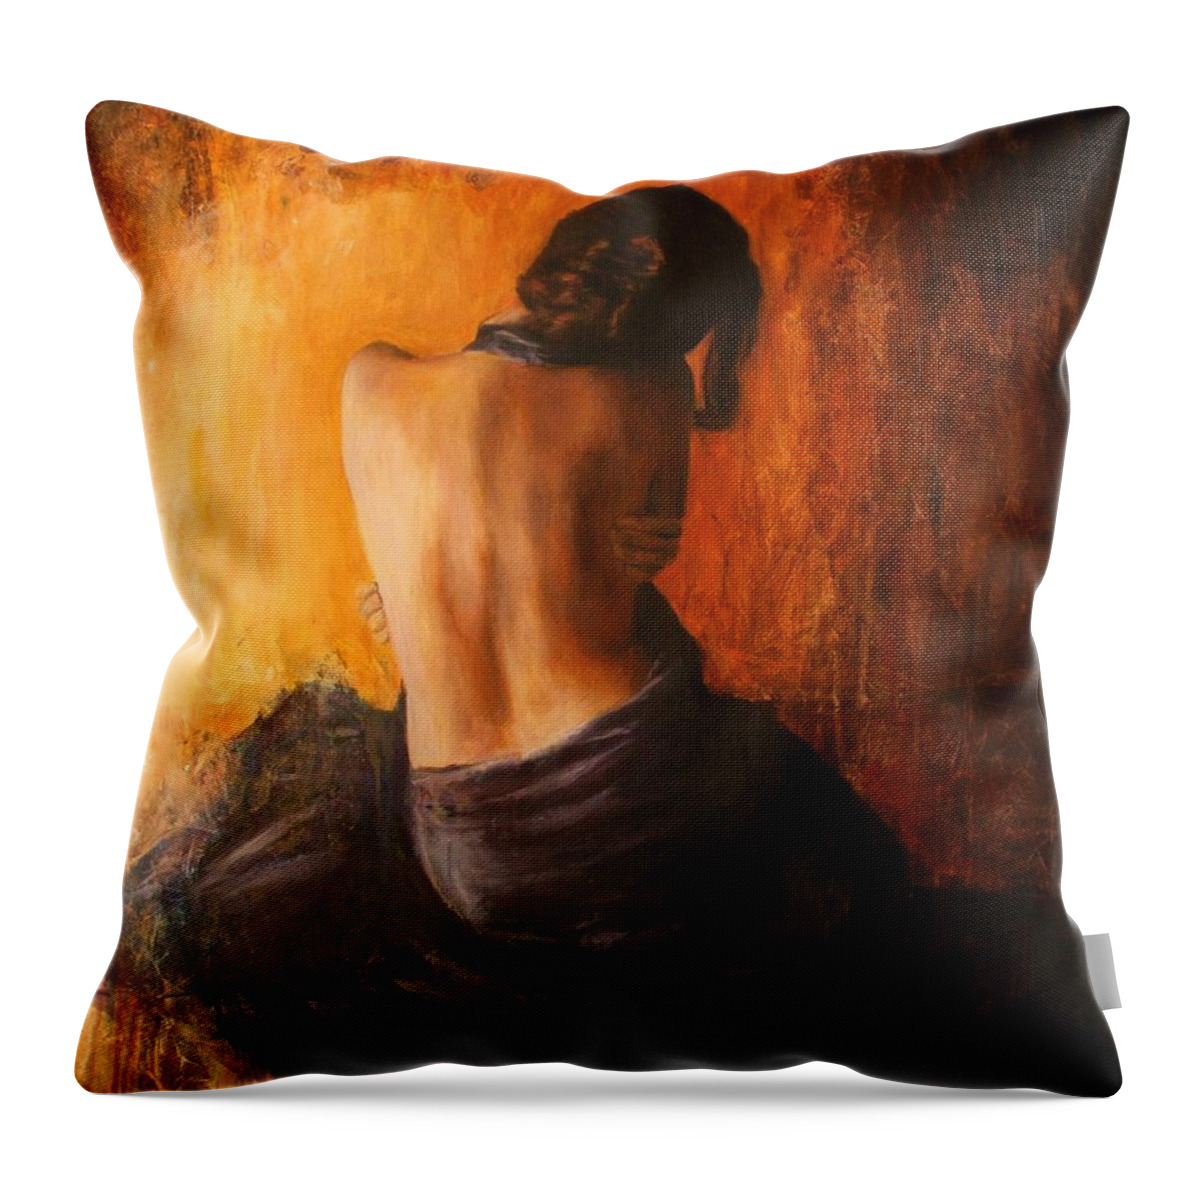 Nude Throw Pillow featuring the painting Viola by Escha Van den bogerd